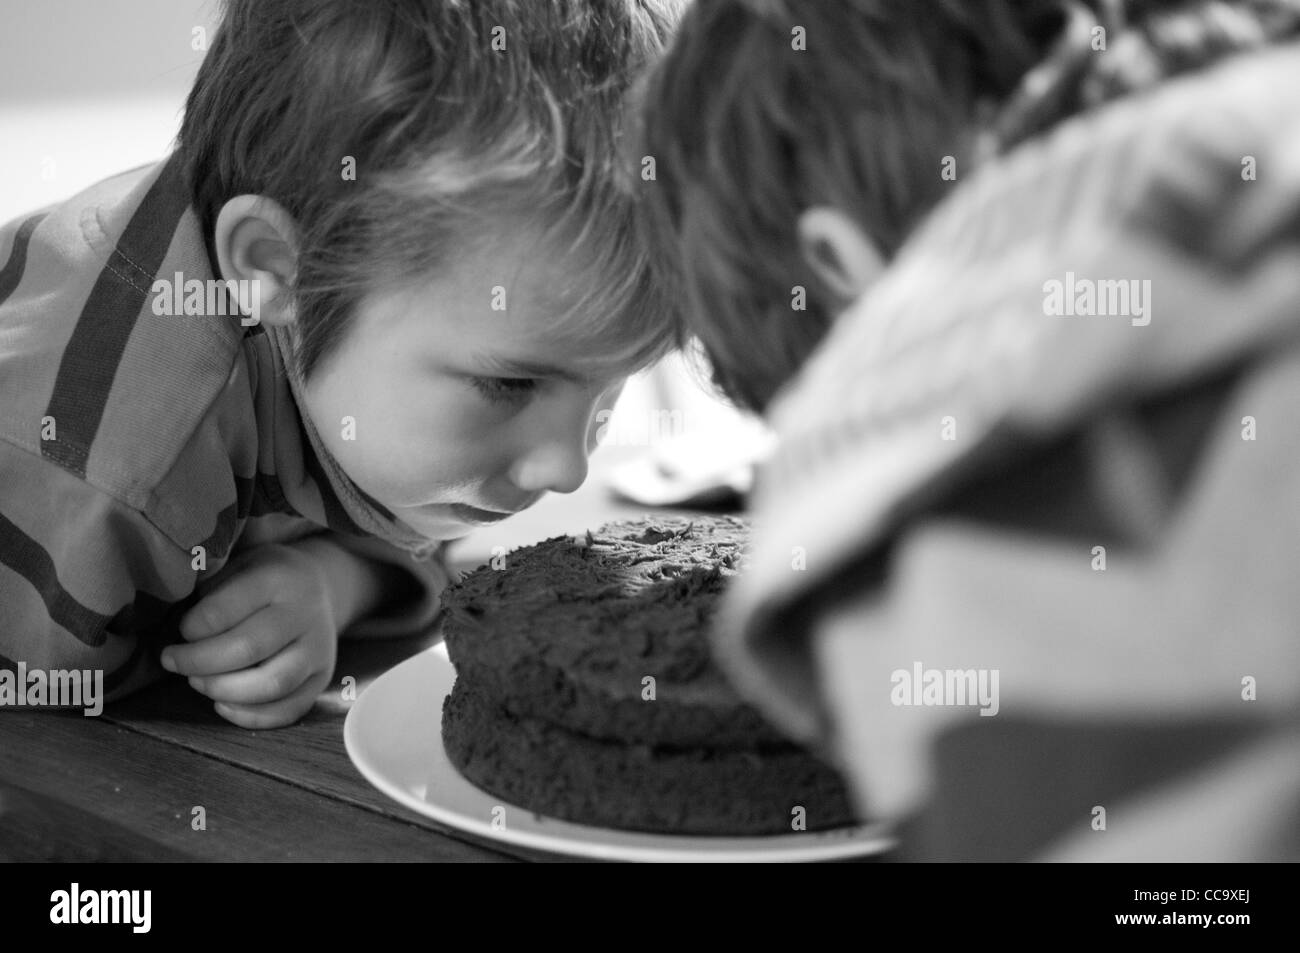 Glückliche junge am Tisch essen ein Stück Schokolade Biskuit Stockfoto